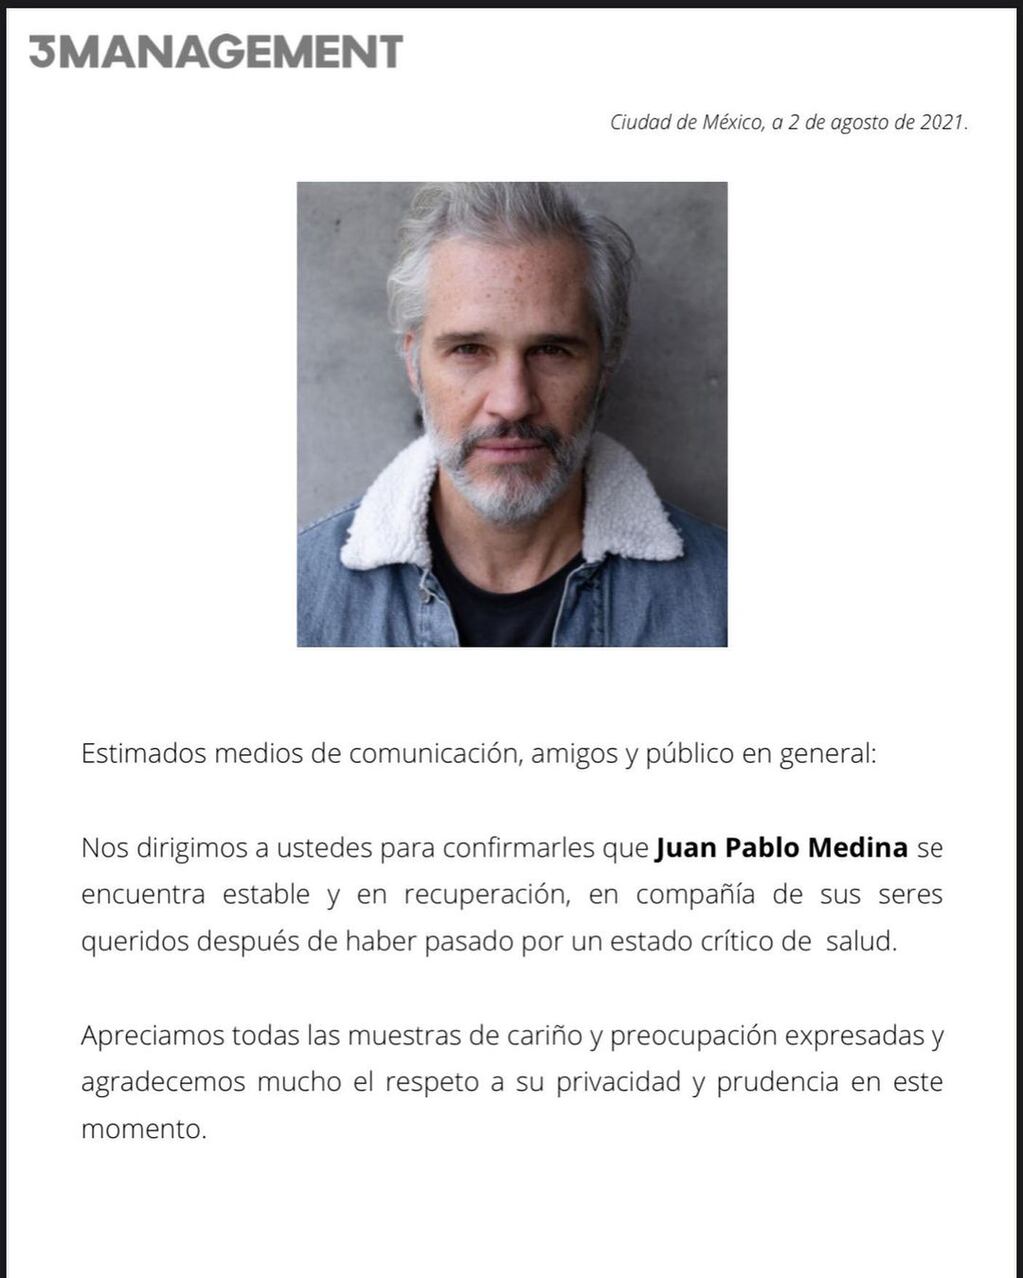 El comunicado de la agencia sobre Juan Pablo Medina, el actor de La Casa de las Flores.